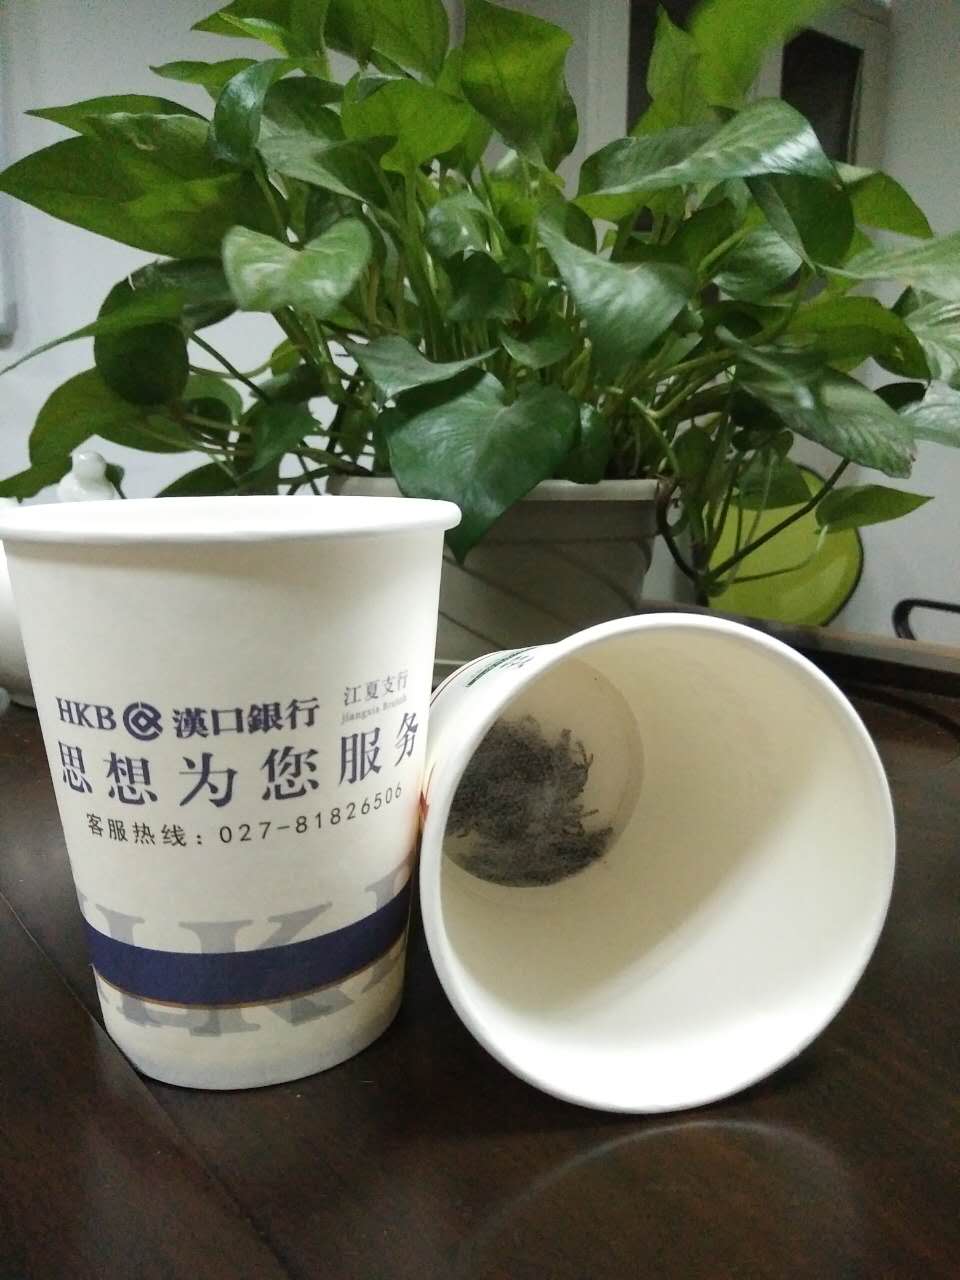 供应隐茶杯/方便茶/杯茶一体 供应隐茶杯专属定制茶